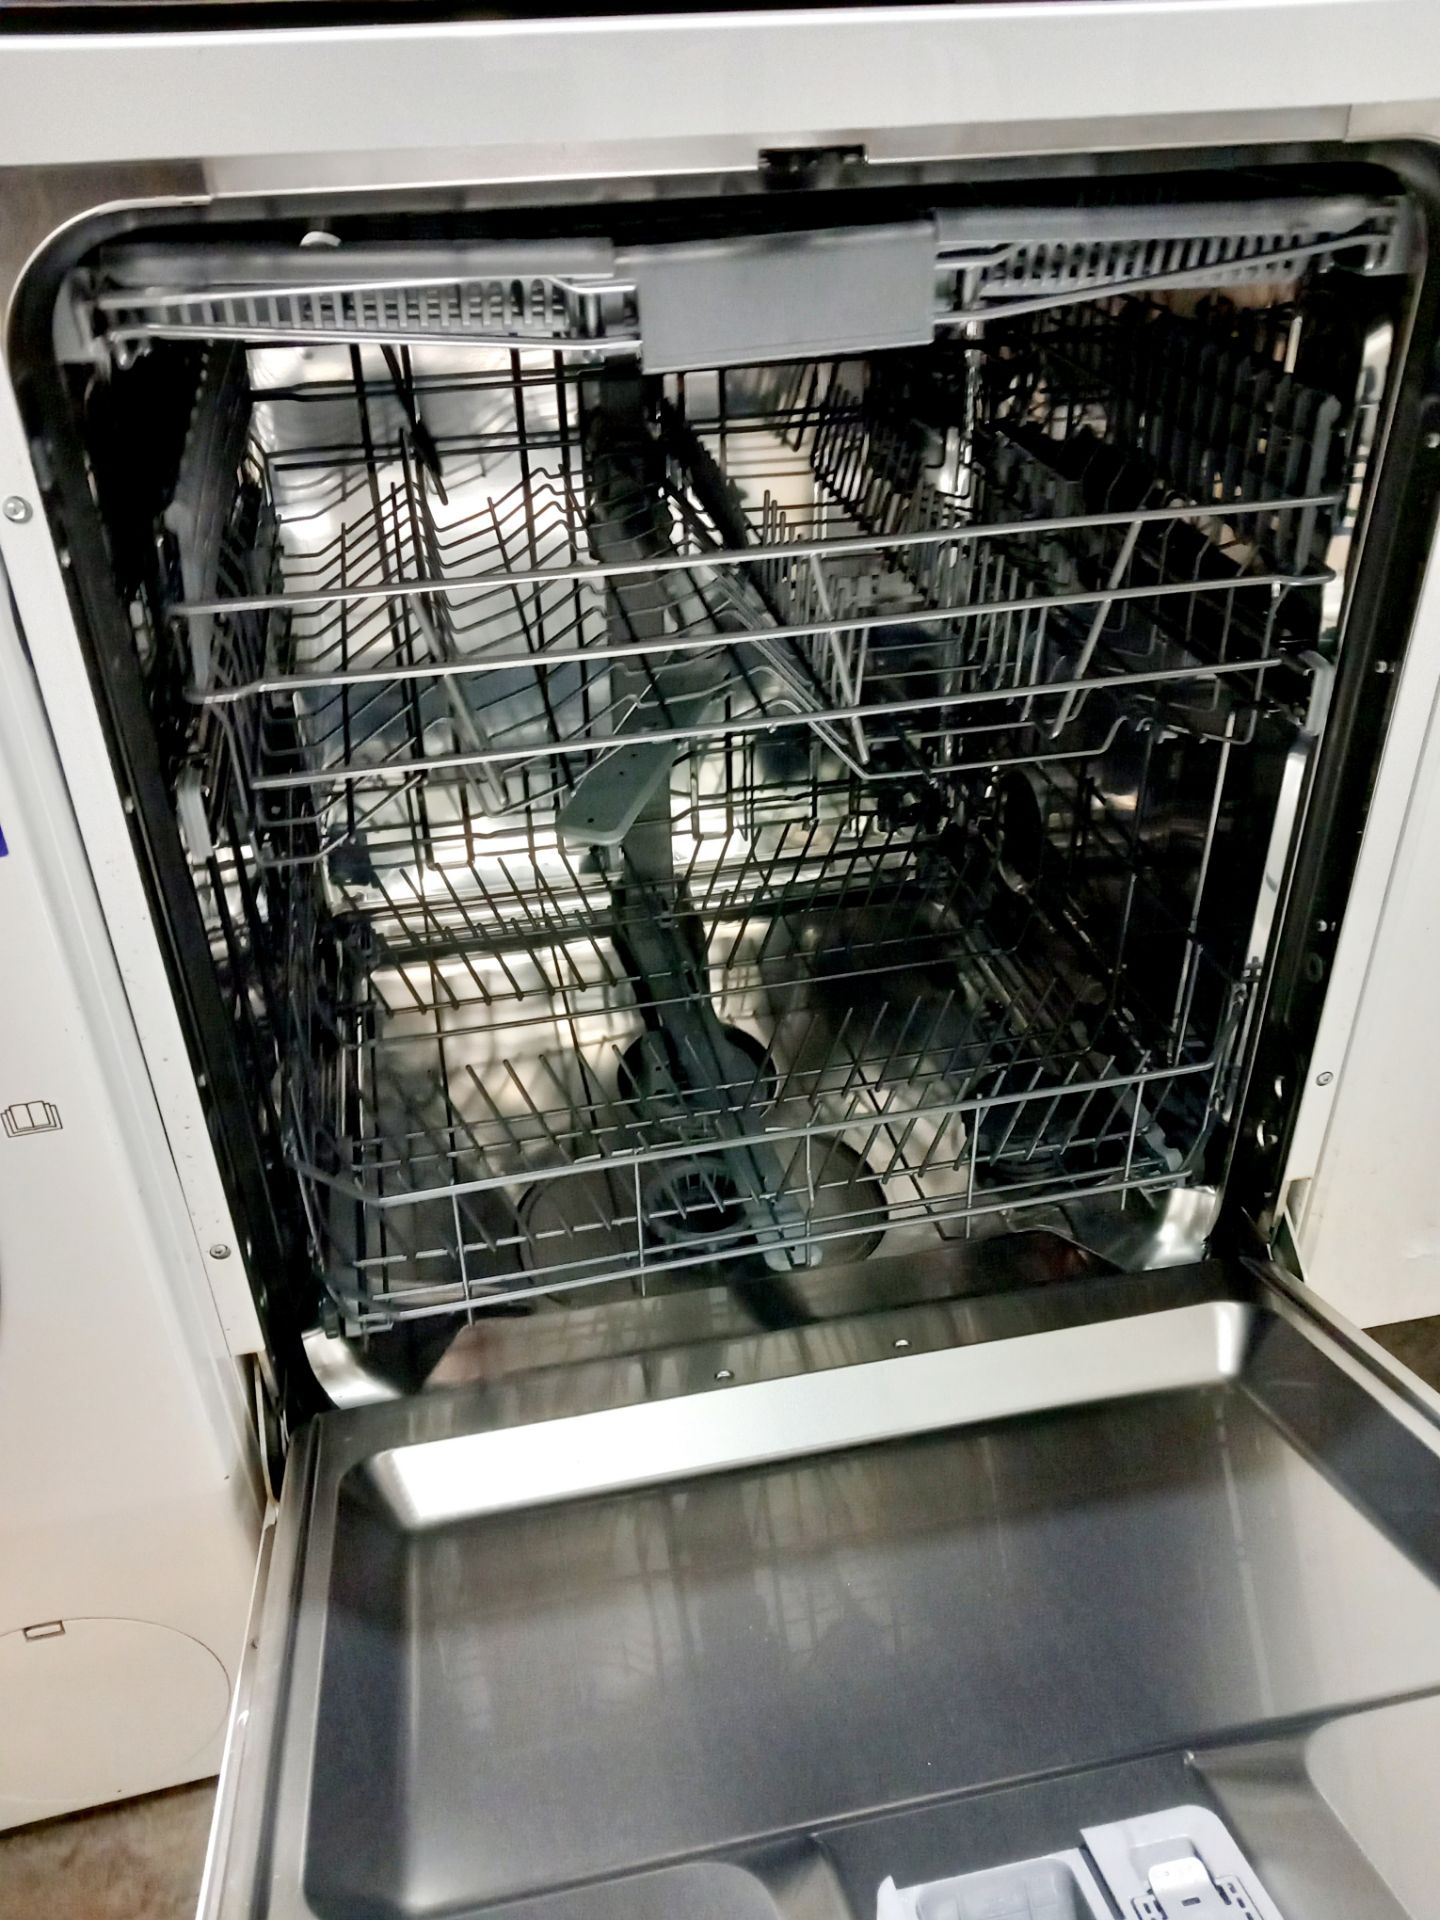 Hisense dishwasher - Image 2 of 2